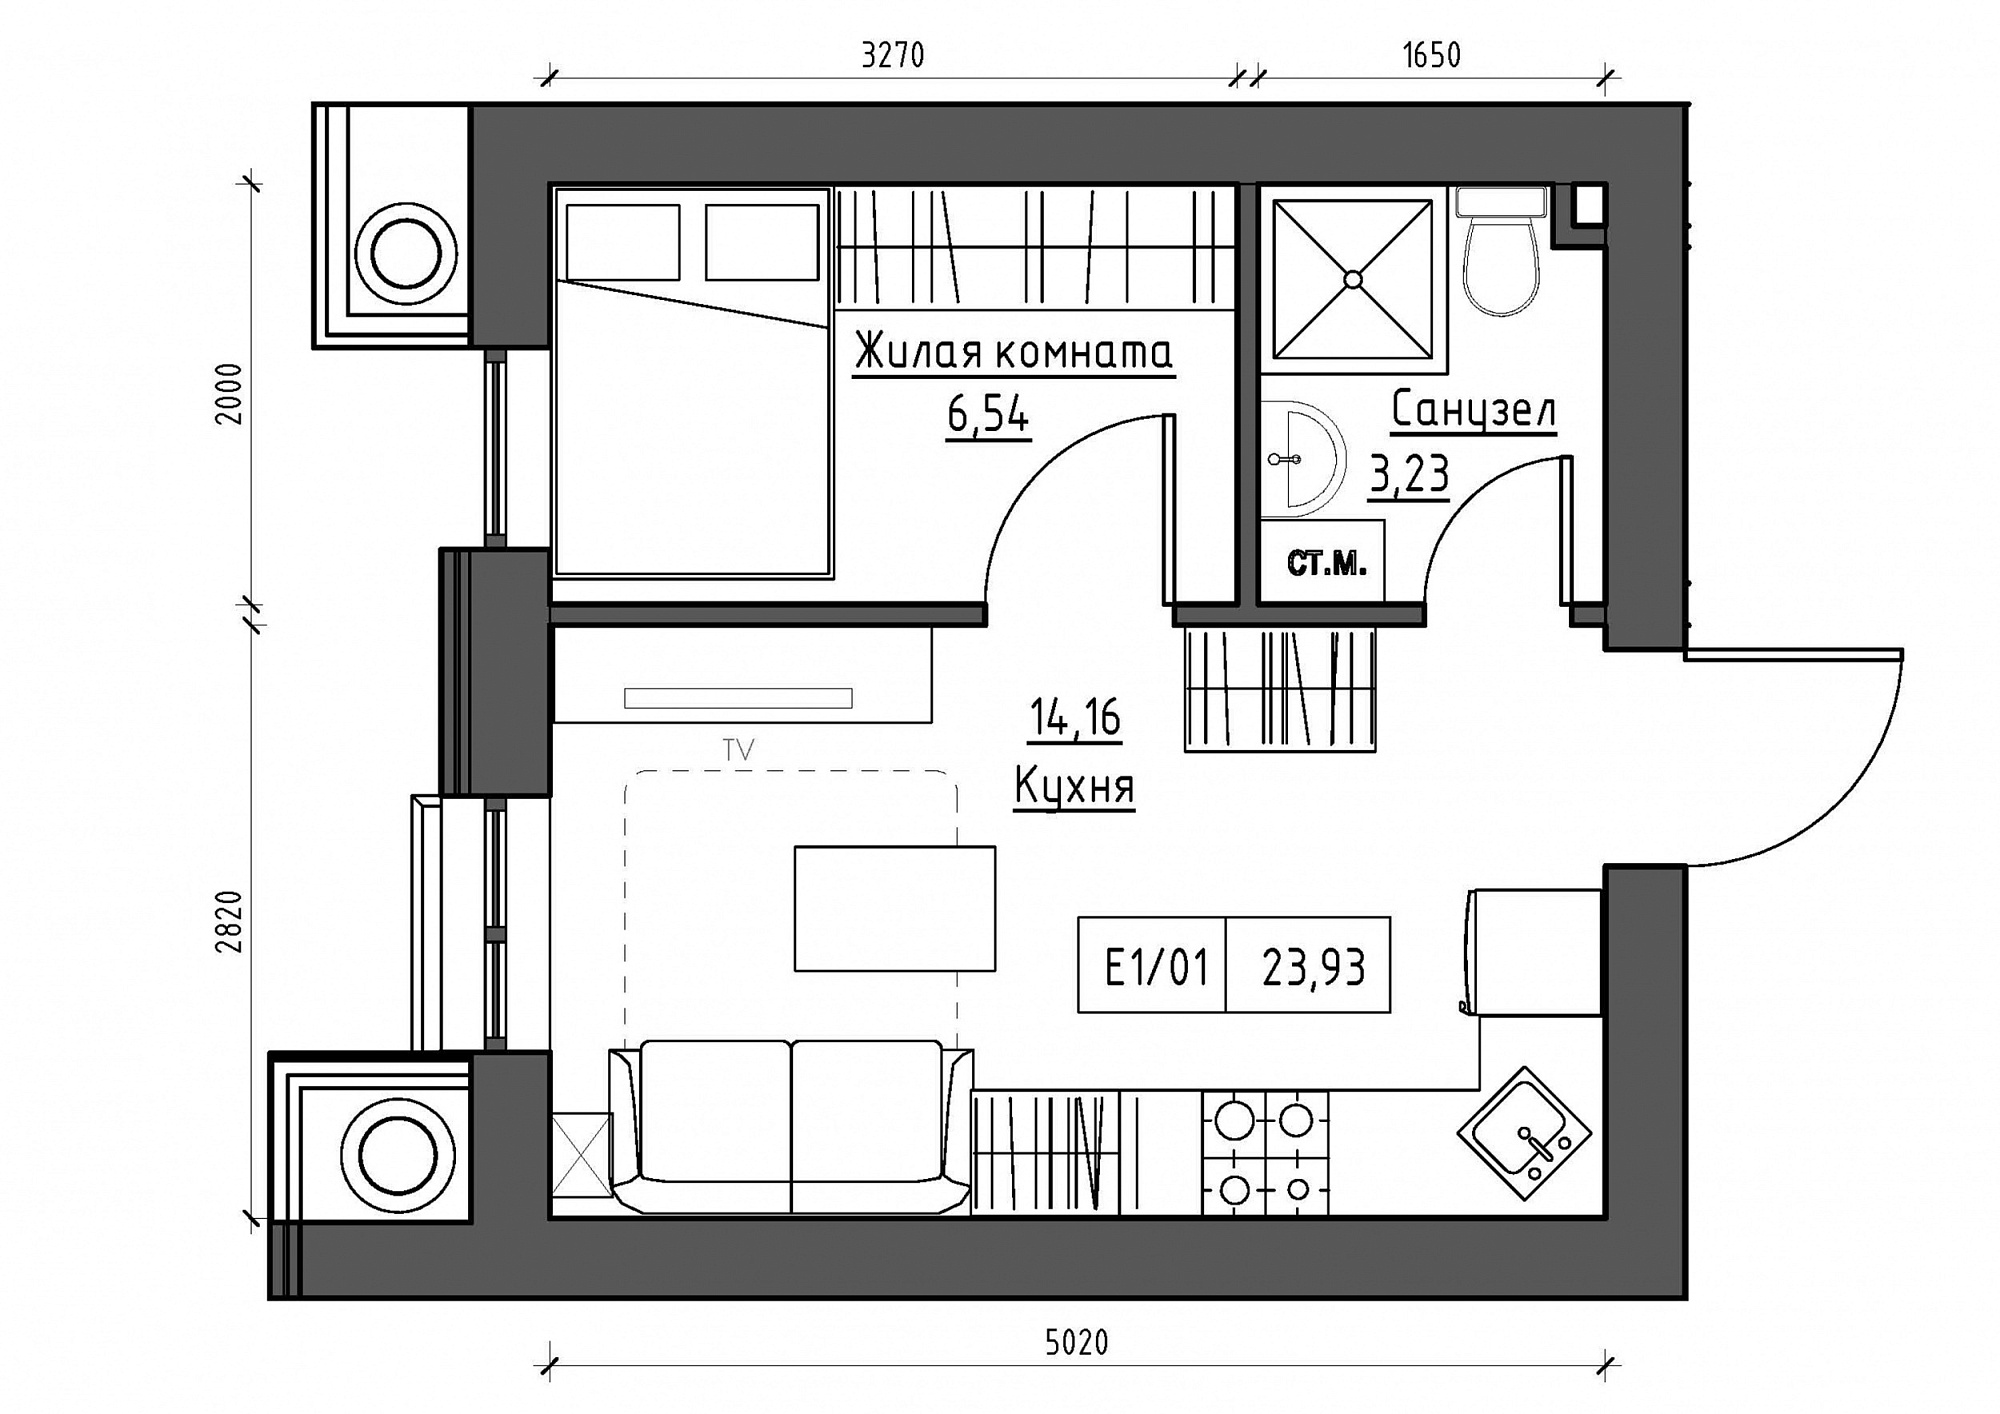 Планировка 1-к квартира площей 23.93м2, KS-012-01/0012.